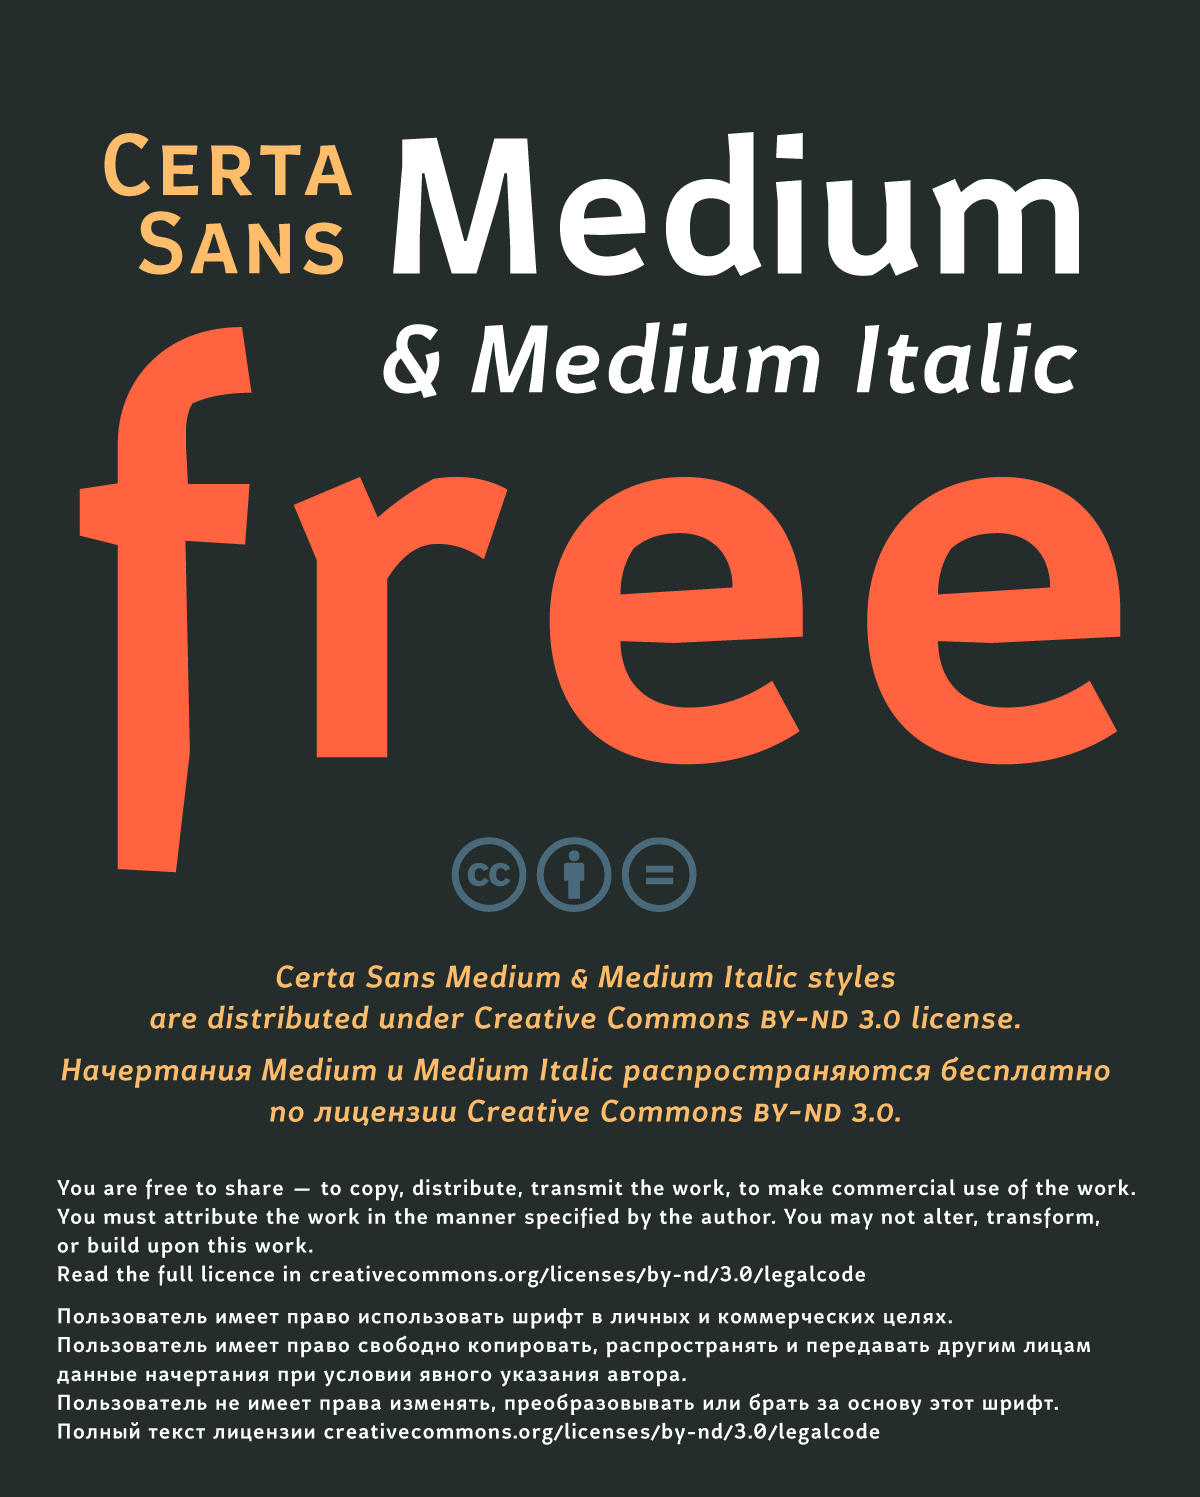 Certa Sans Free Font - sans-serif